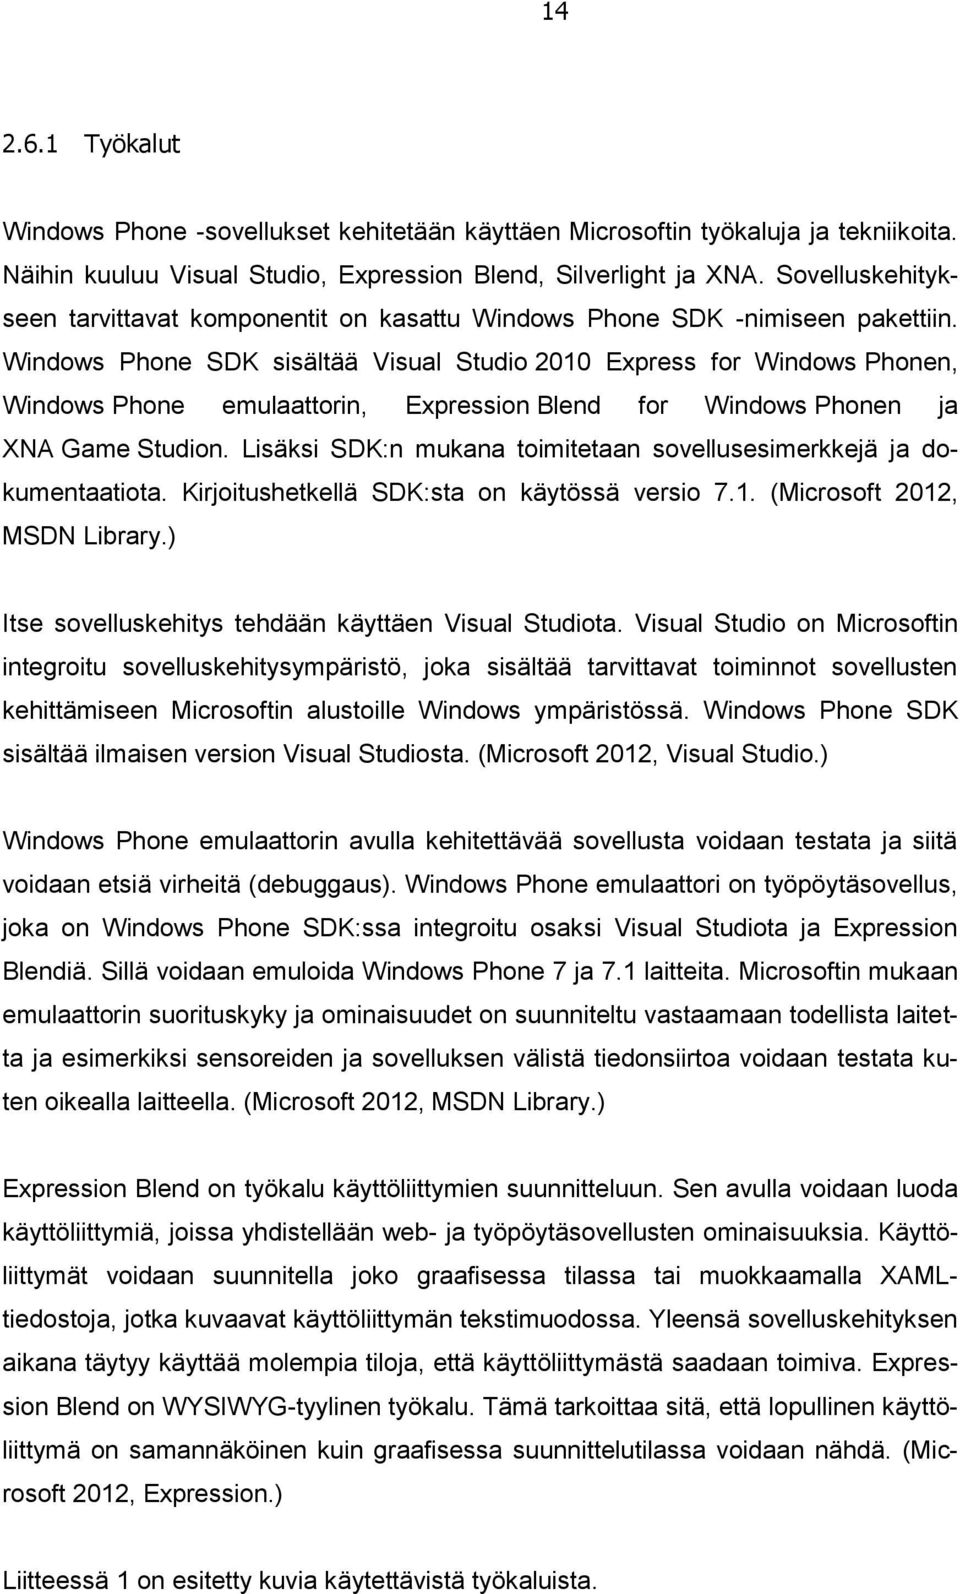 Windows Phone SDK sisältää Visual Studio 2010 Express for Windows Phonen, Windows Phone emulaattorin, Expression Blend for Windows Phonen ja XNA Game Studion.